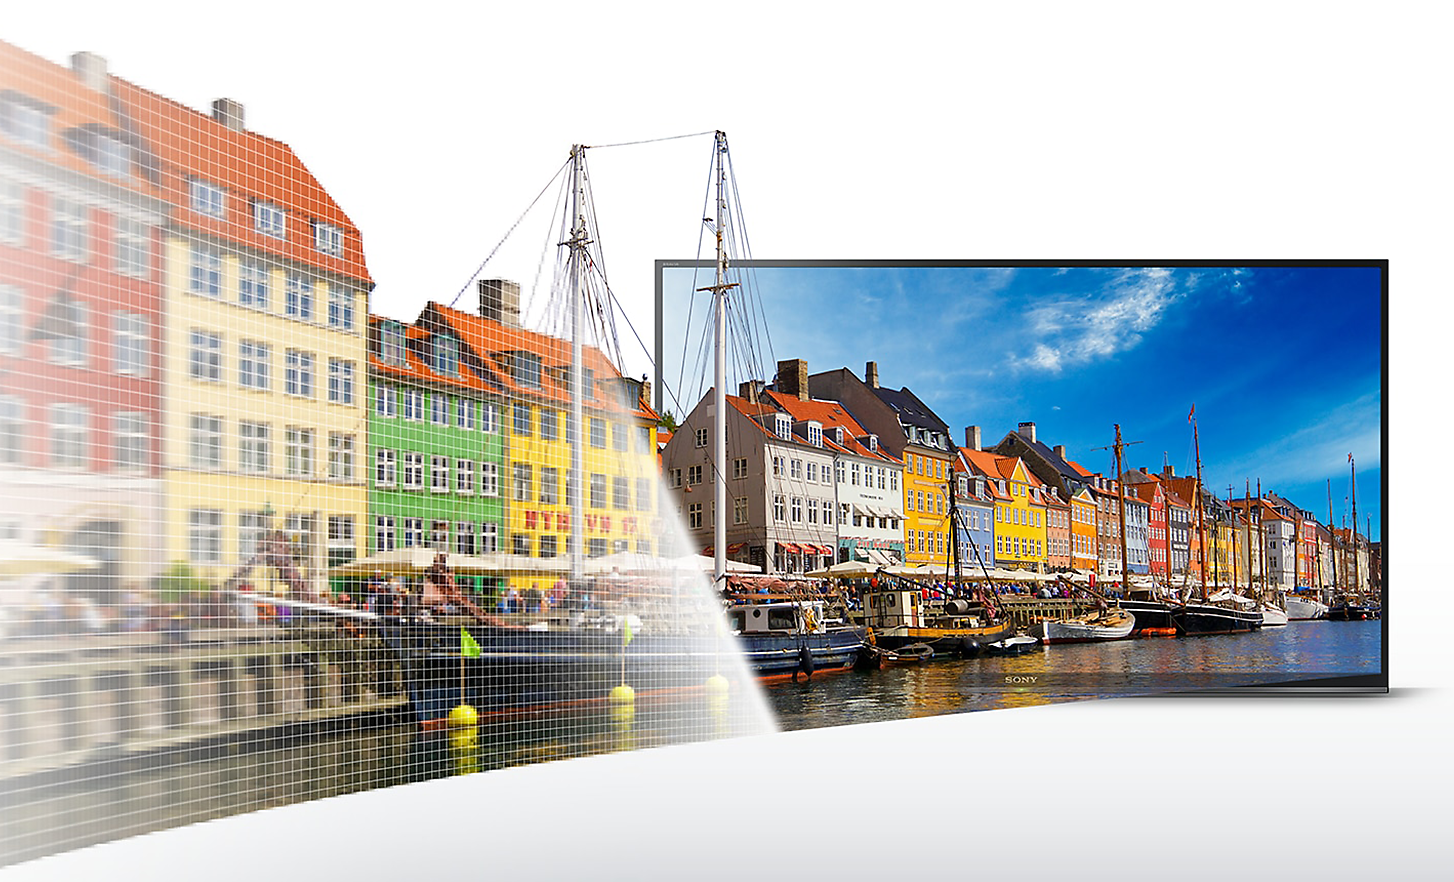 تلفزيون BRAVIA مع لقطة شاشة لقوارب في ميناء وخلفها منازل متعددة الألوان مع استمرار المشهد الممتد من التلفزيون إلى اليسار